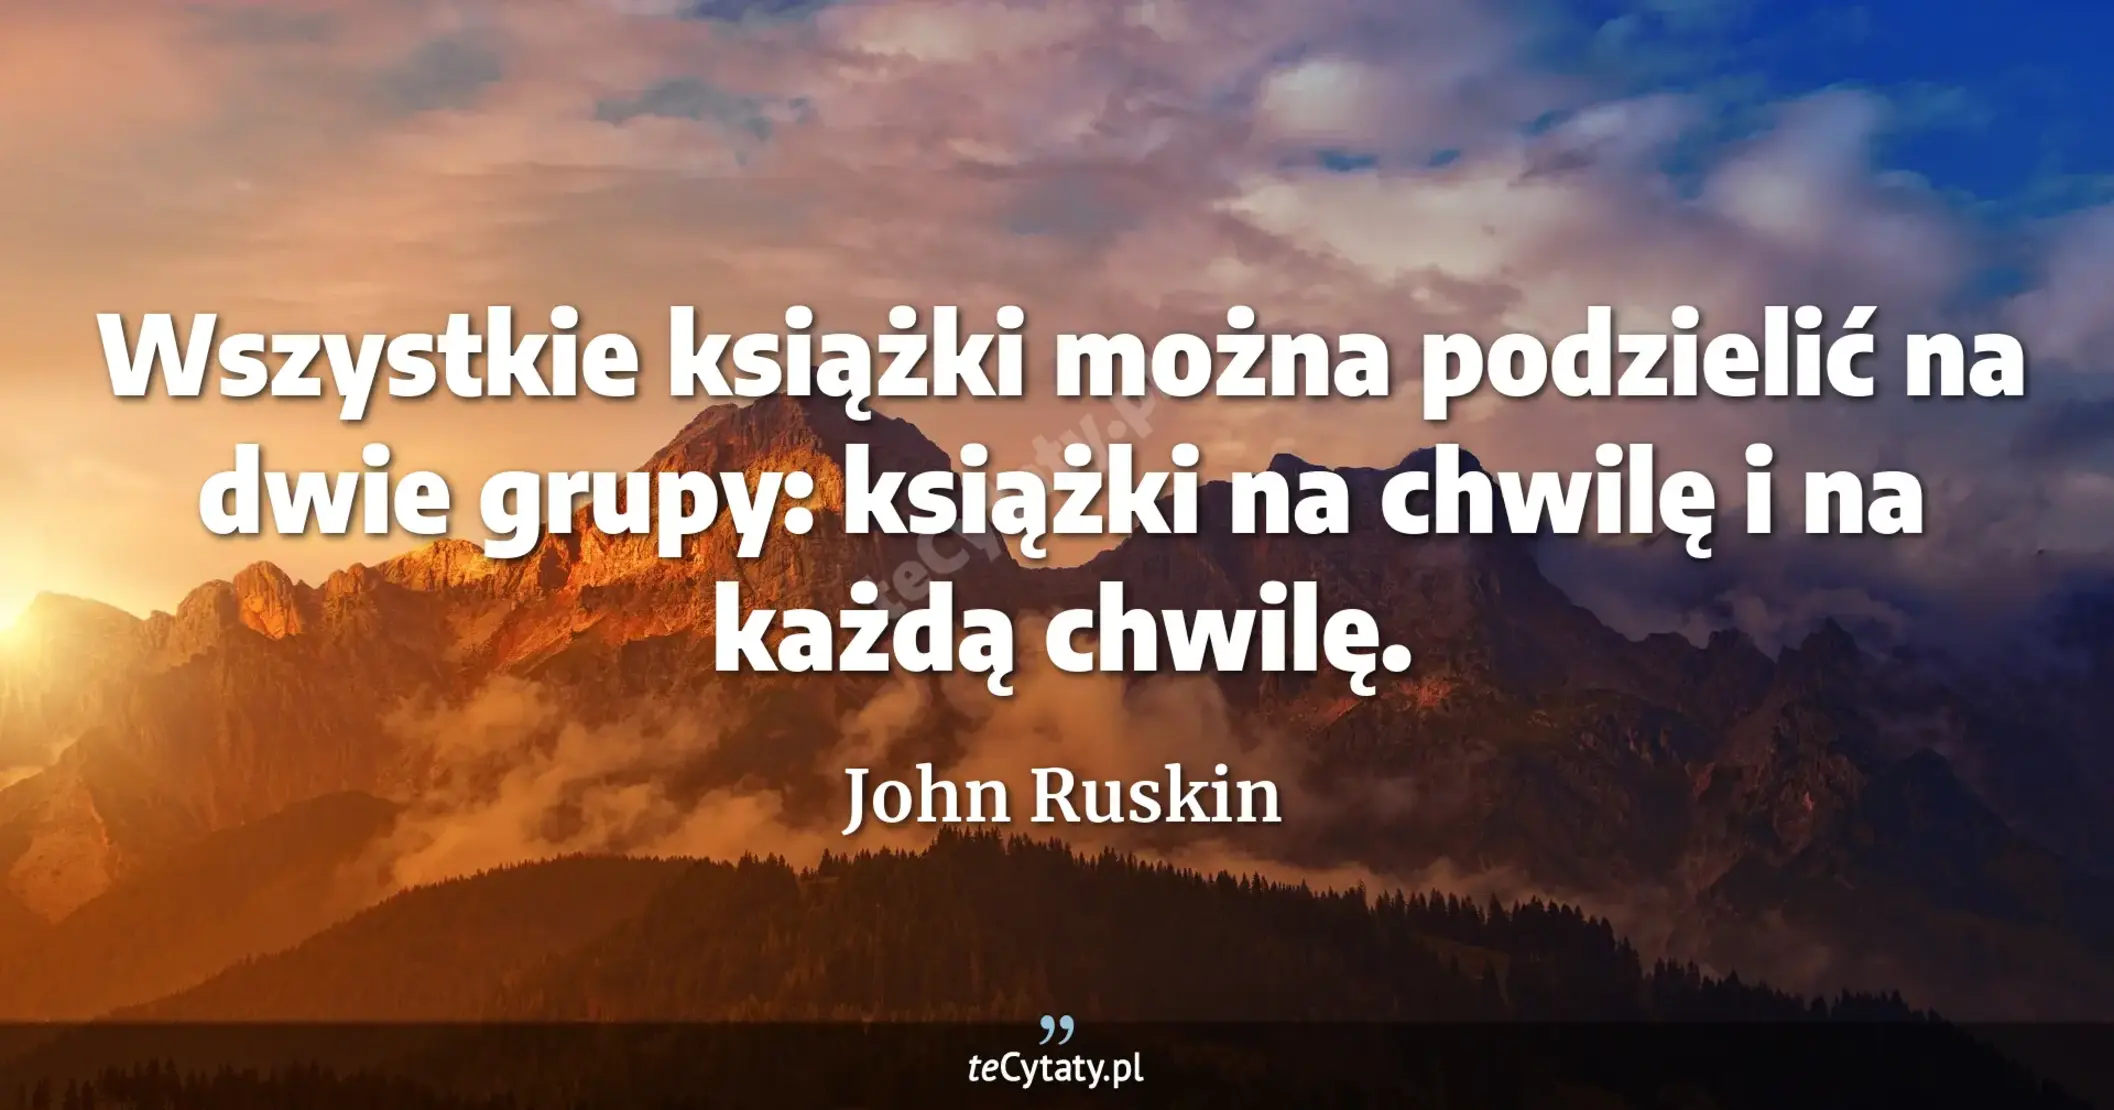 Wszystkie książki można podzielić na dwie grupy: książki na chwilę i na każdą chwilę. - John Ruskin